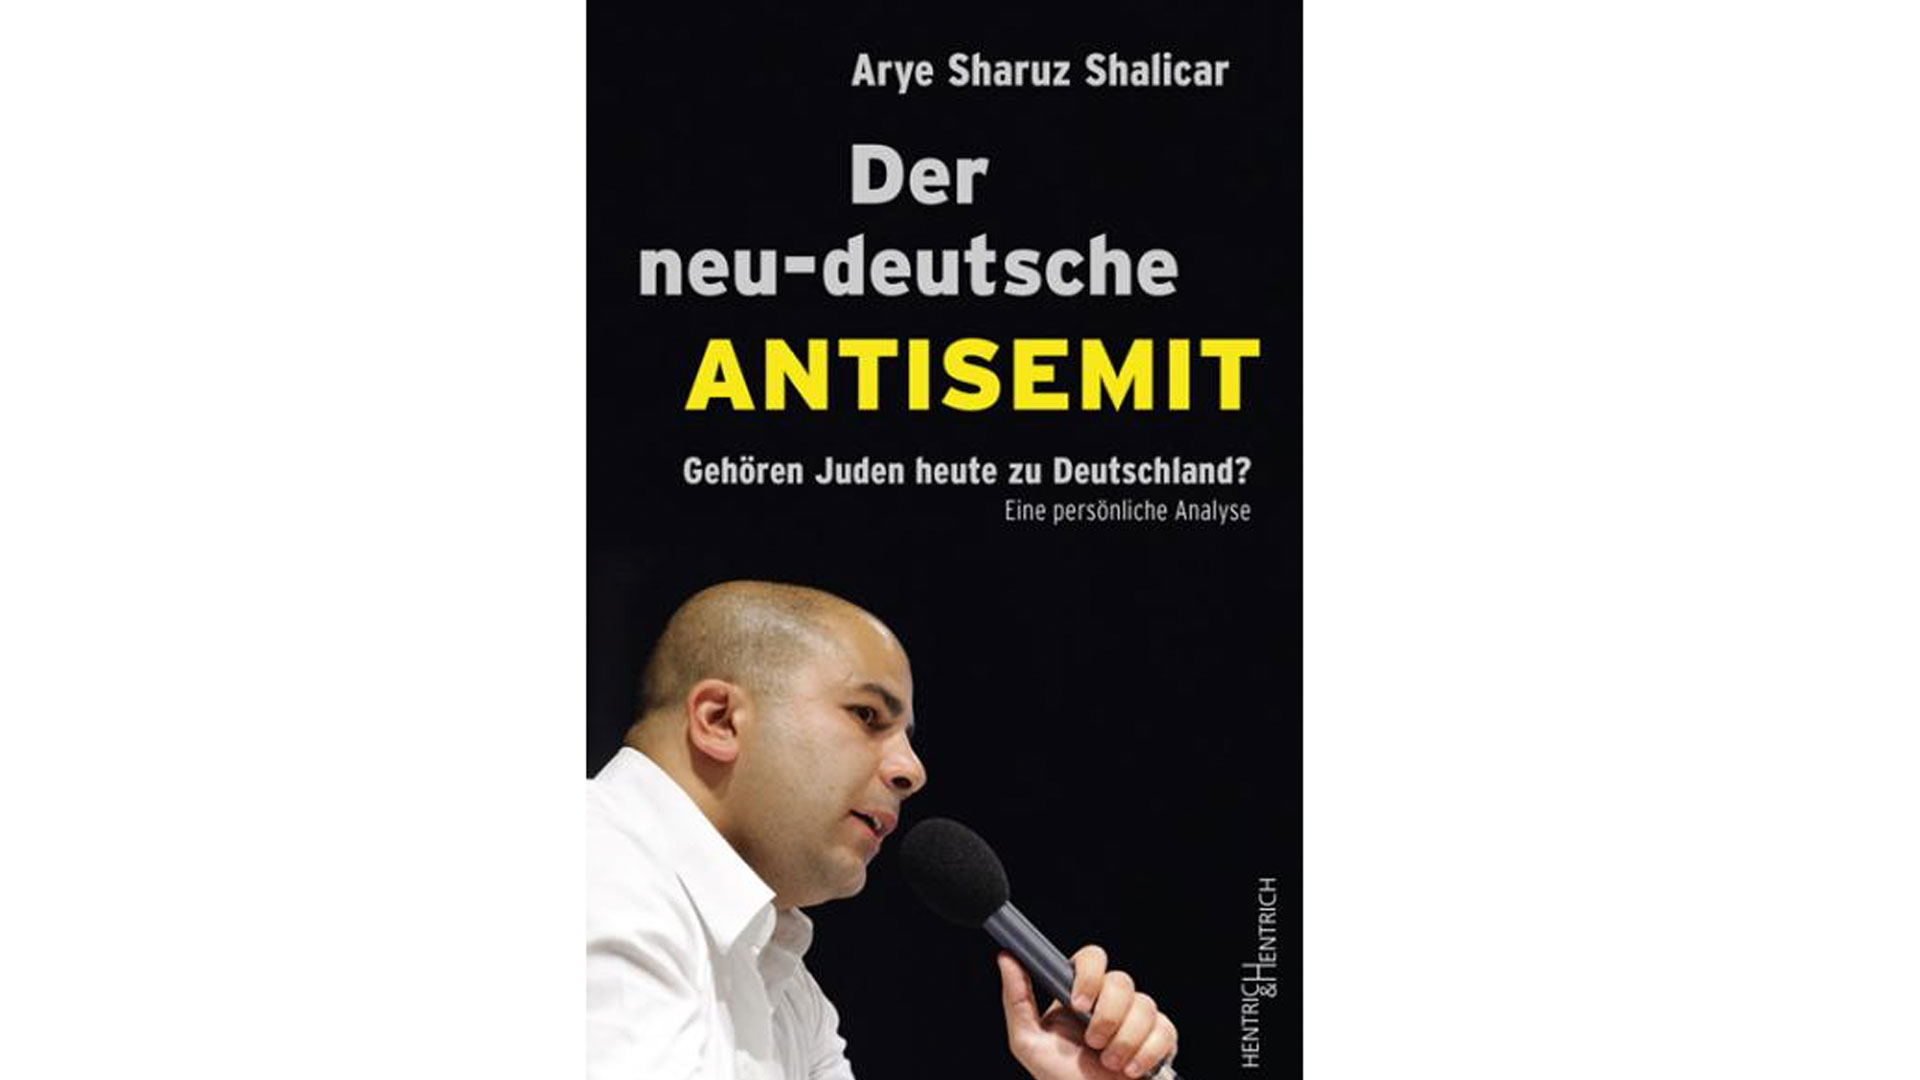 Arye Sharuz Shalicar: „Der neu-deutsche Antisemit. Gehören Juden heute zu Deutschland? Eine persönliche Analyse“ Hentrich & Hentrich 164 Seiten, 16,90 Euro ISBN: 978-3-95565-271-5